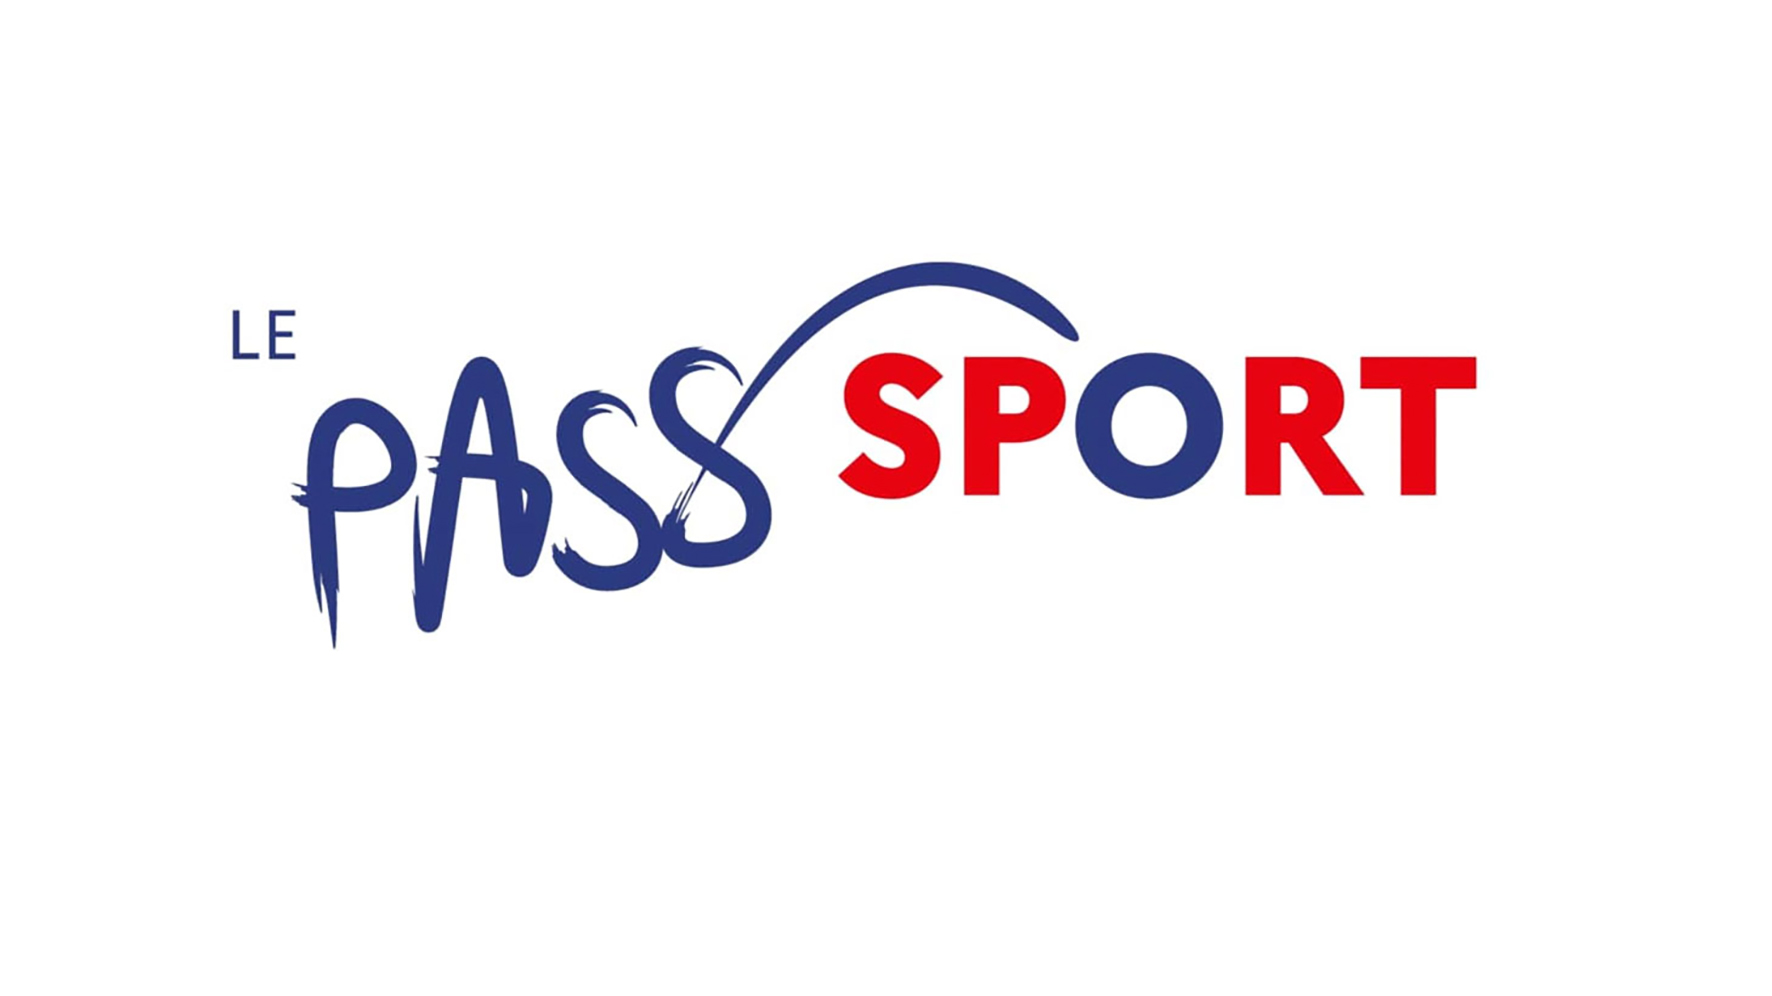 https://garches.fr/app/uploads/2022/01/logo_pass_sport.jpg